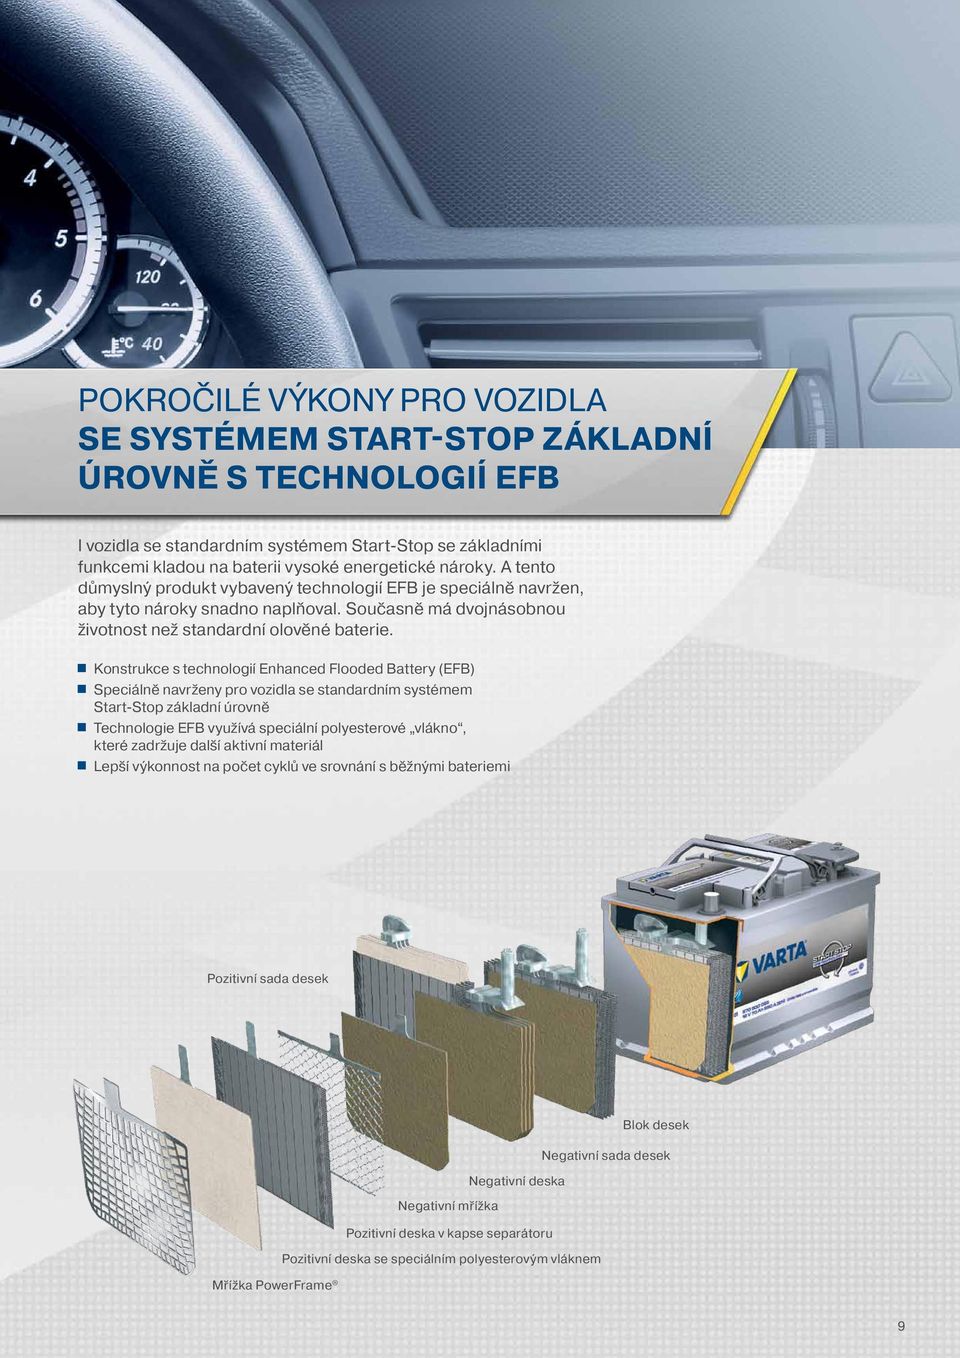 Konstrukce s technologií Enhanced Flooded Battery (EFB) Speciálně navrženy pro vozidla se standardním systémem Start-Stop základní úrovně Technologie EFB využívá speciální polyesterové vlákno, které